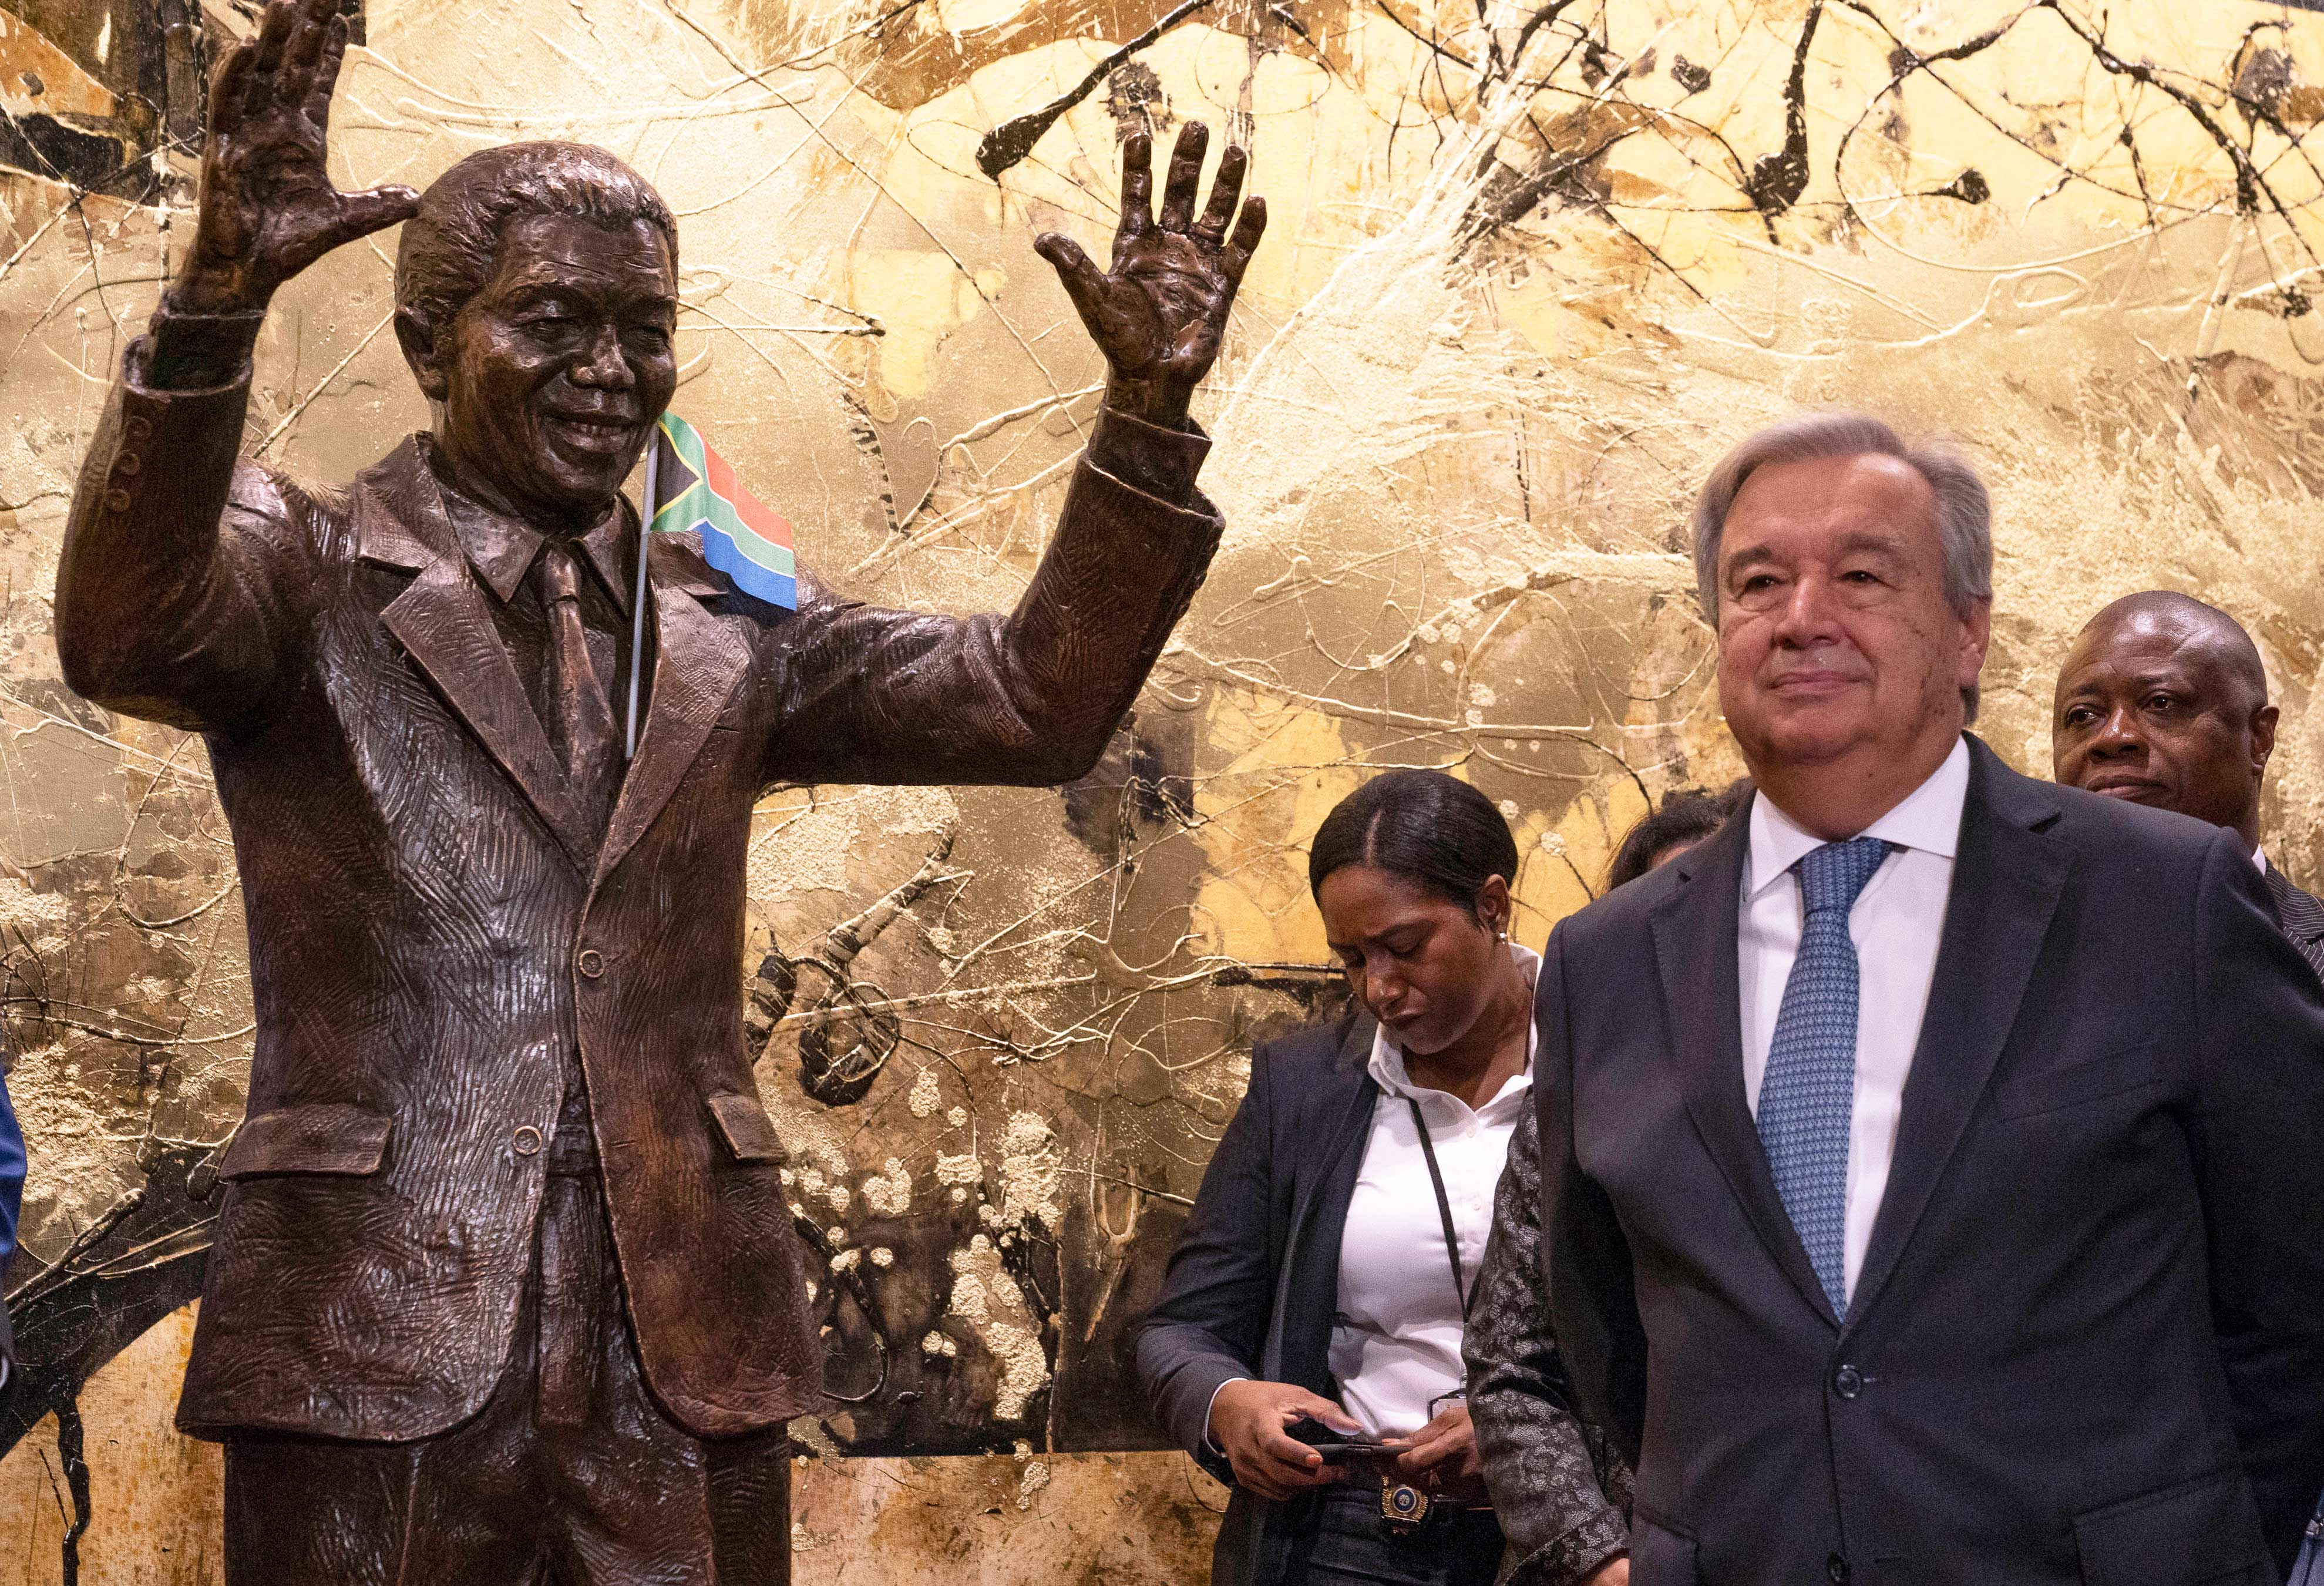 秘书长出席由南非共和国赠送的纳尔逊·曼德拉雕像的揭幕仪式。2018年。 ©联合国图片/Cia Pak